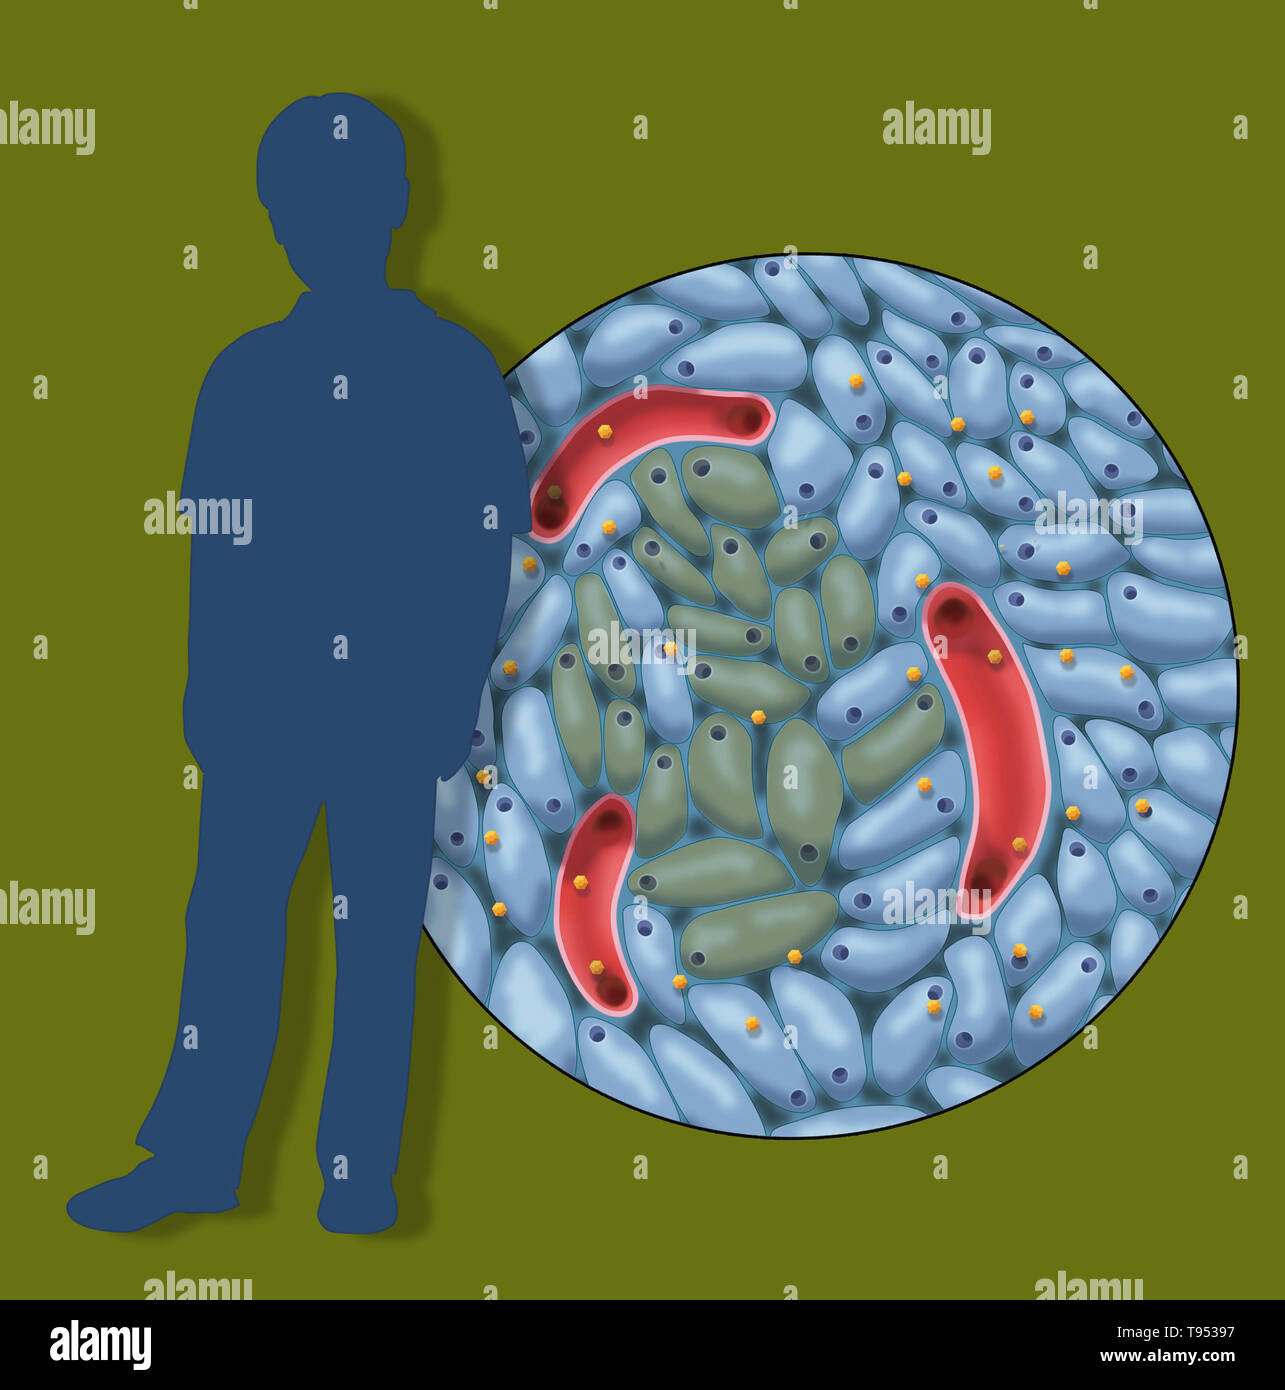 Eine Abbildung mit beschädigten Insulin-produzierenden Zellen in der Kindheit Diabetes Typ 1. Stockfoto